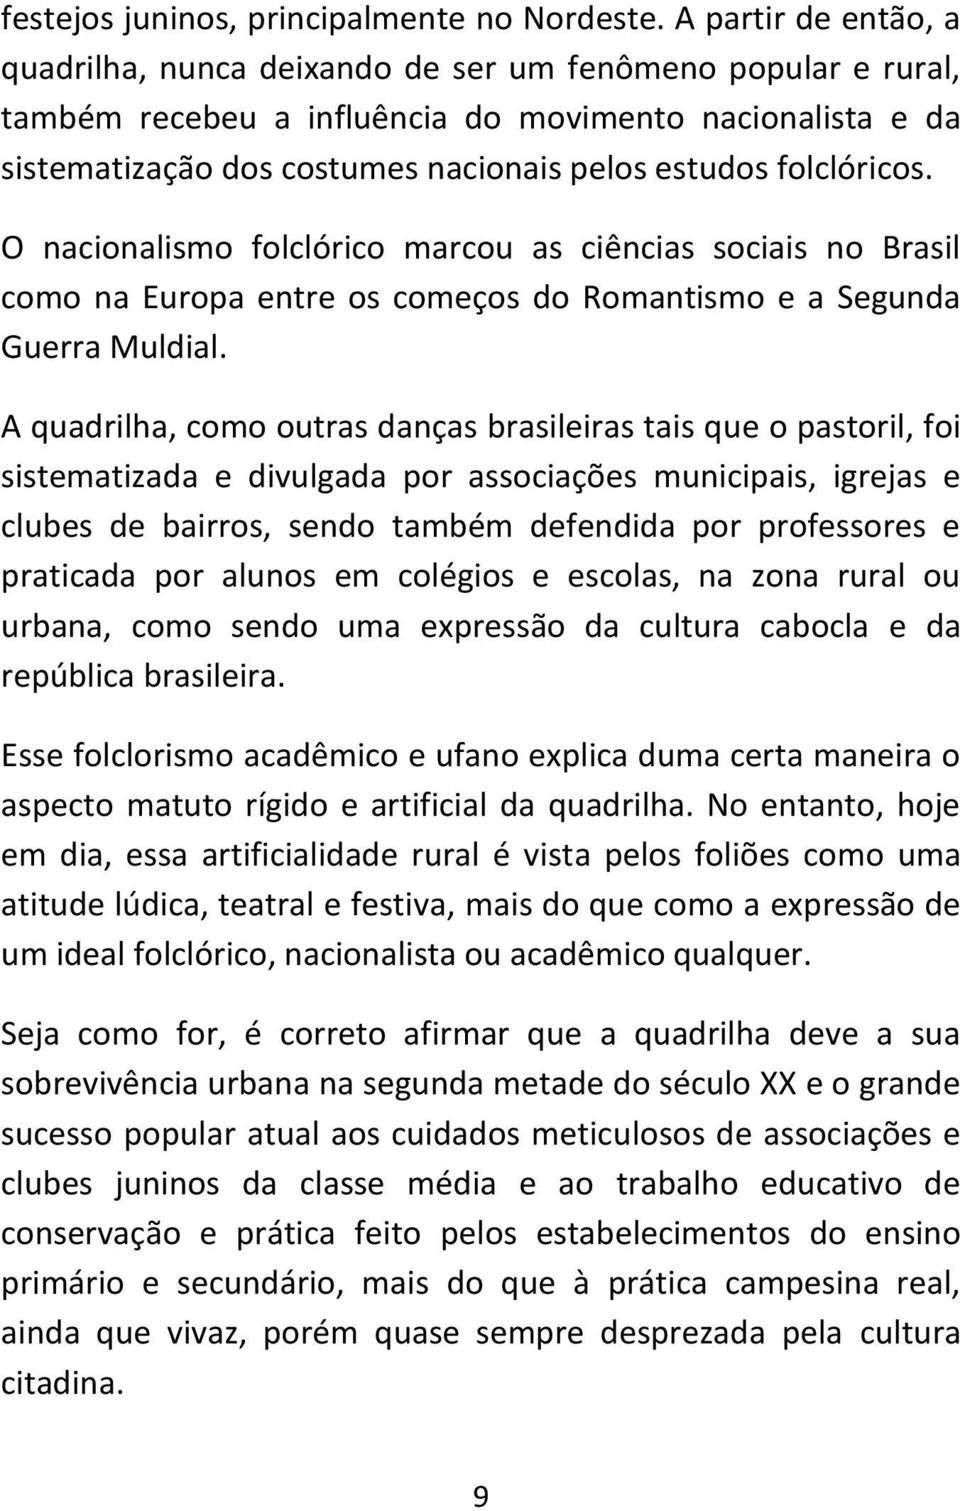 folclóricos. O nacionalismo folclórico marcou as ciências sociais no Brasil como na Europa entre os começos do Romantismo e a Segunda Guerra Muldial.